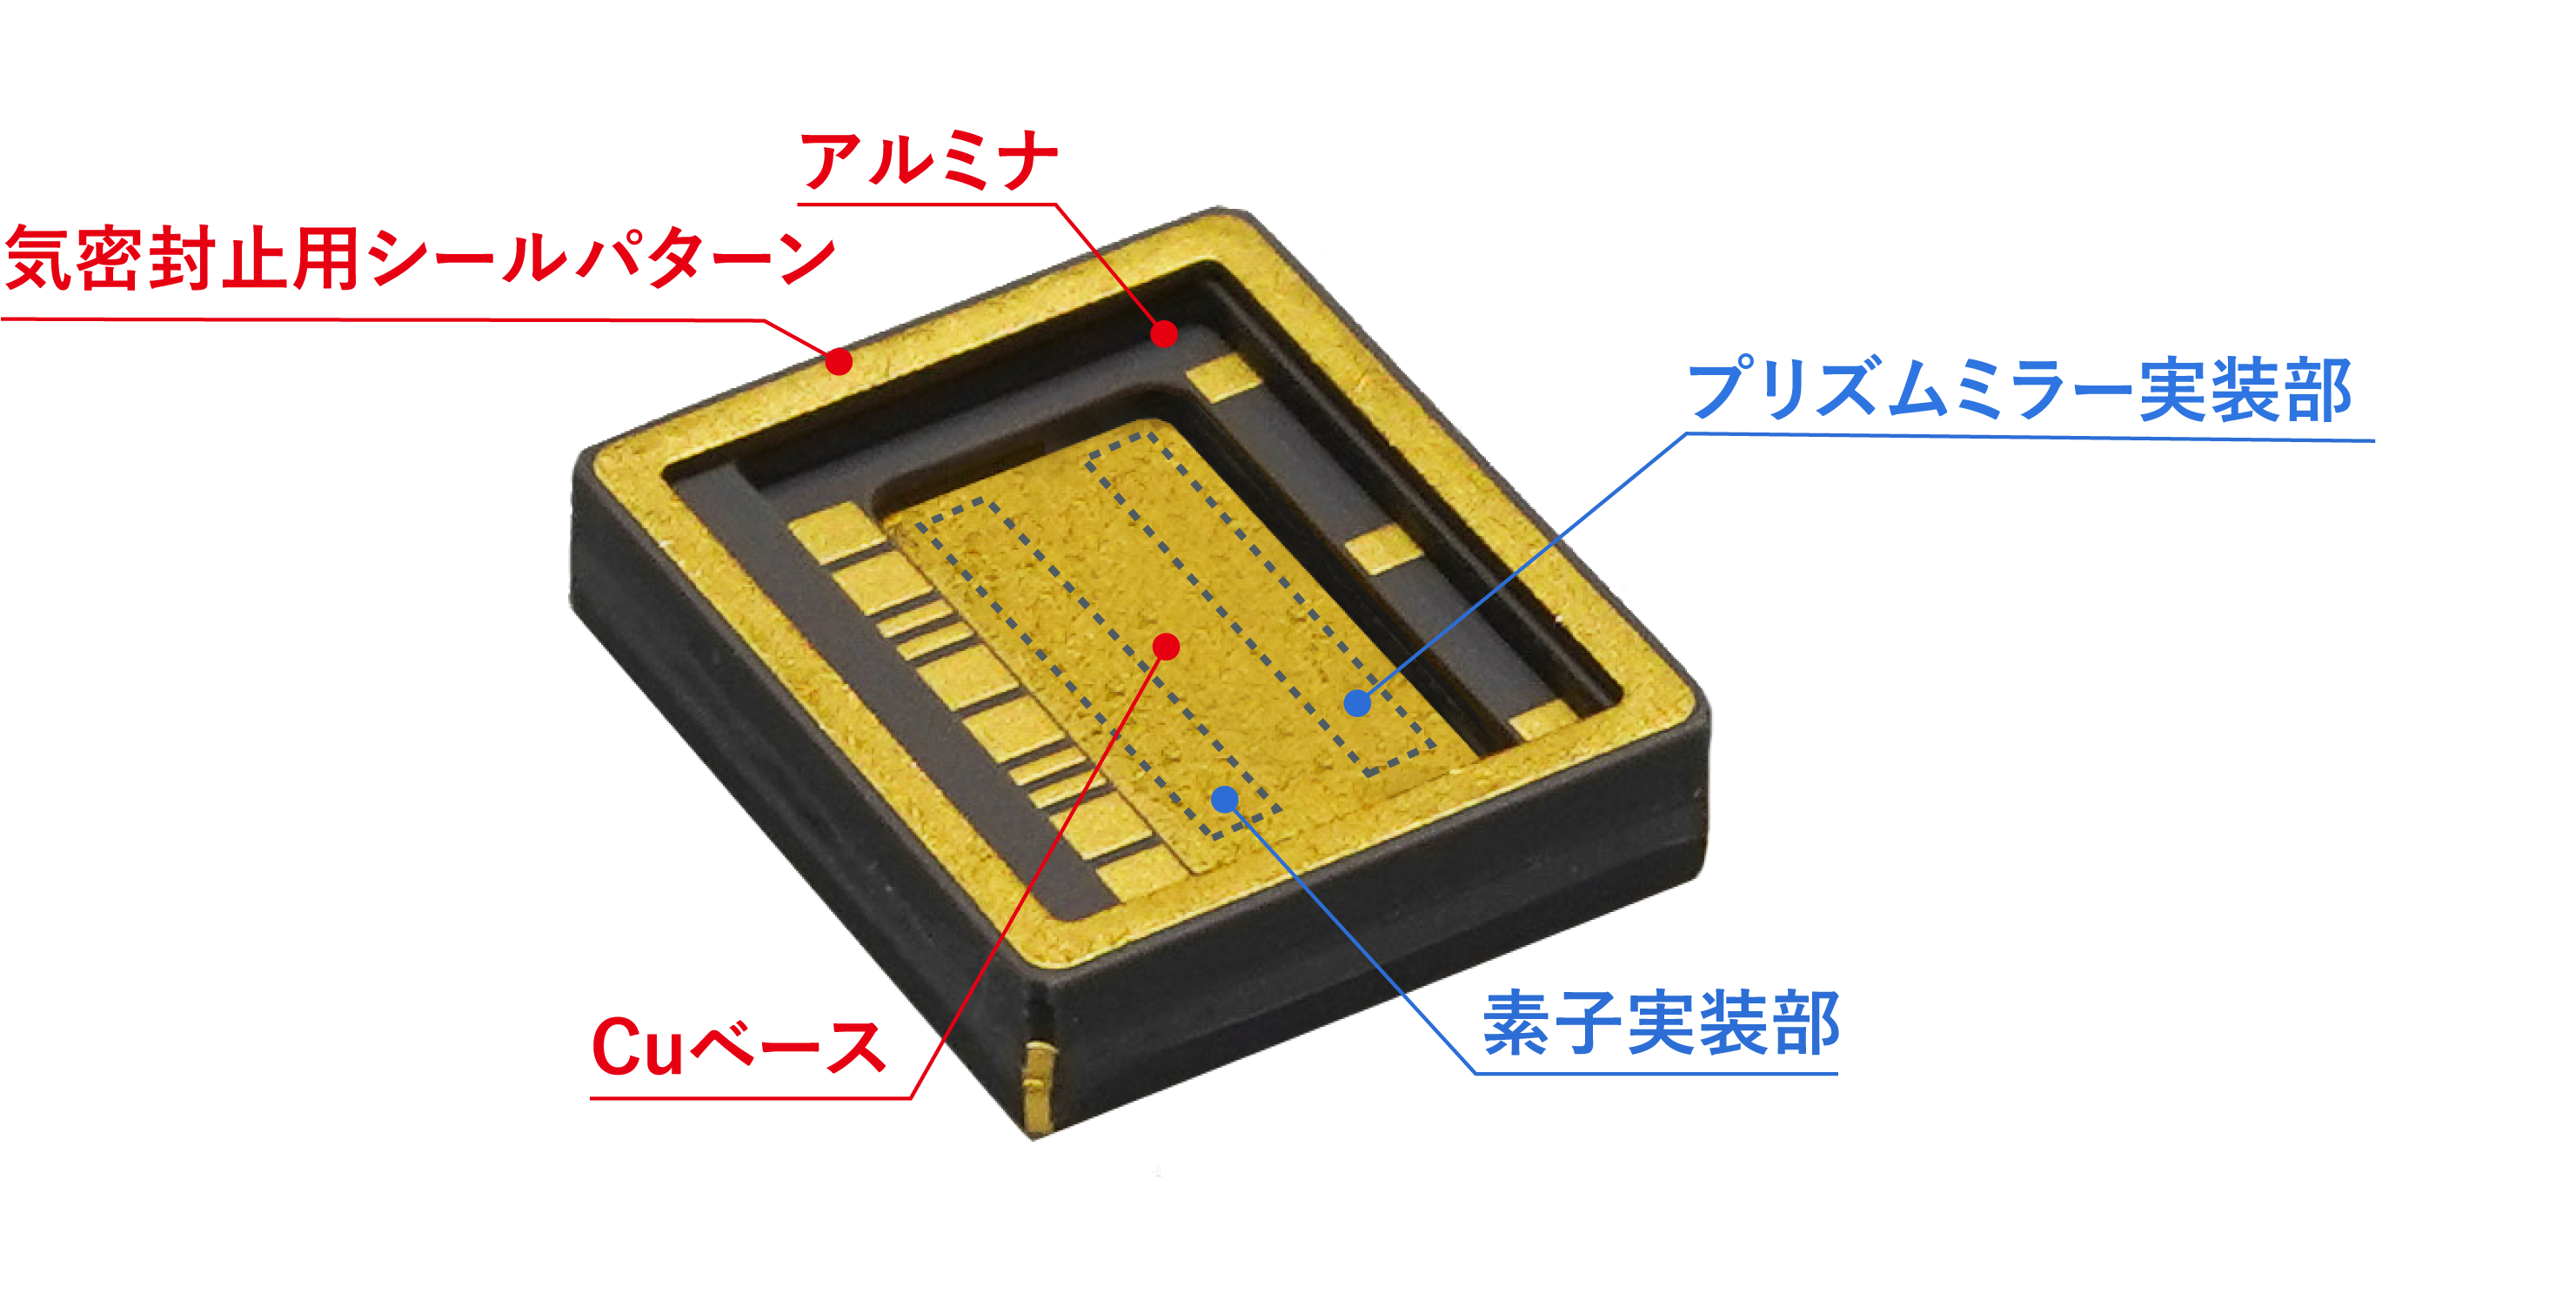 端面発光レーザー用パッケージコンセプト事例